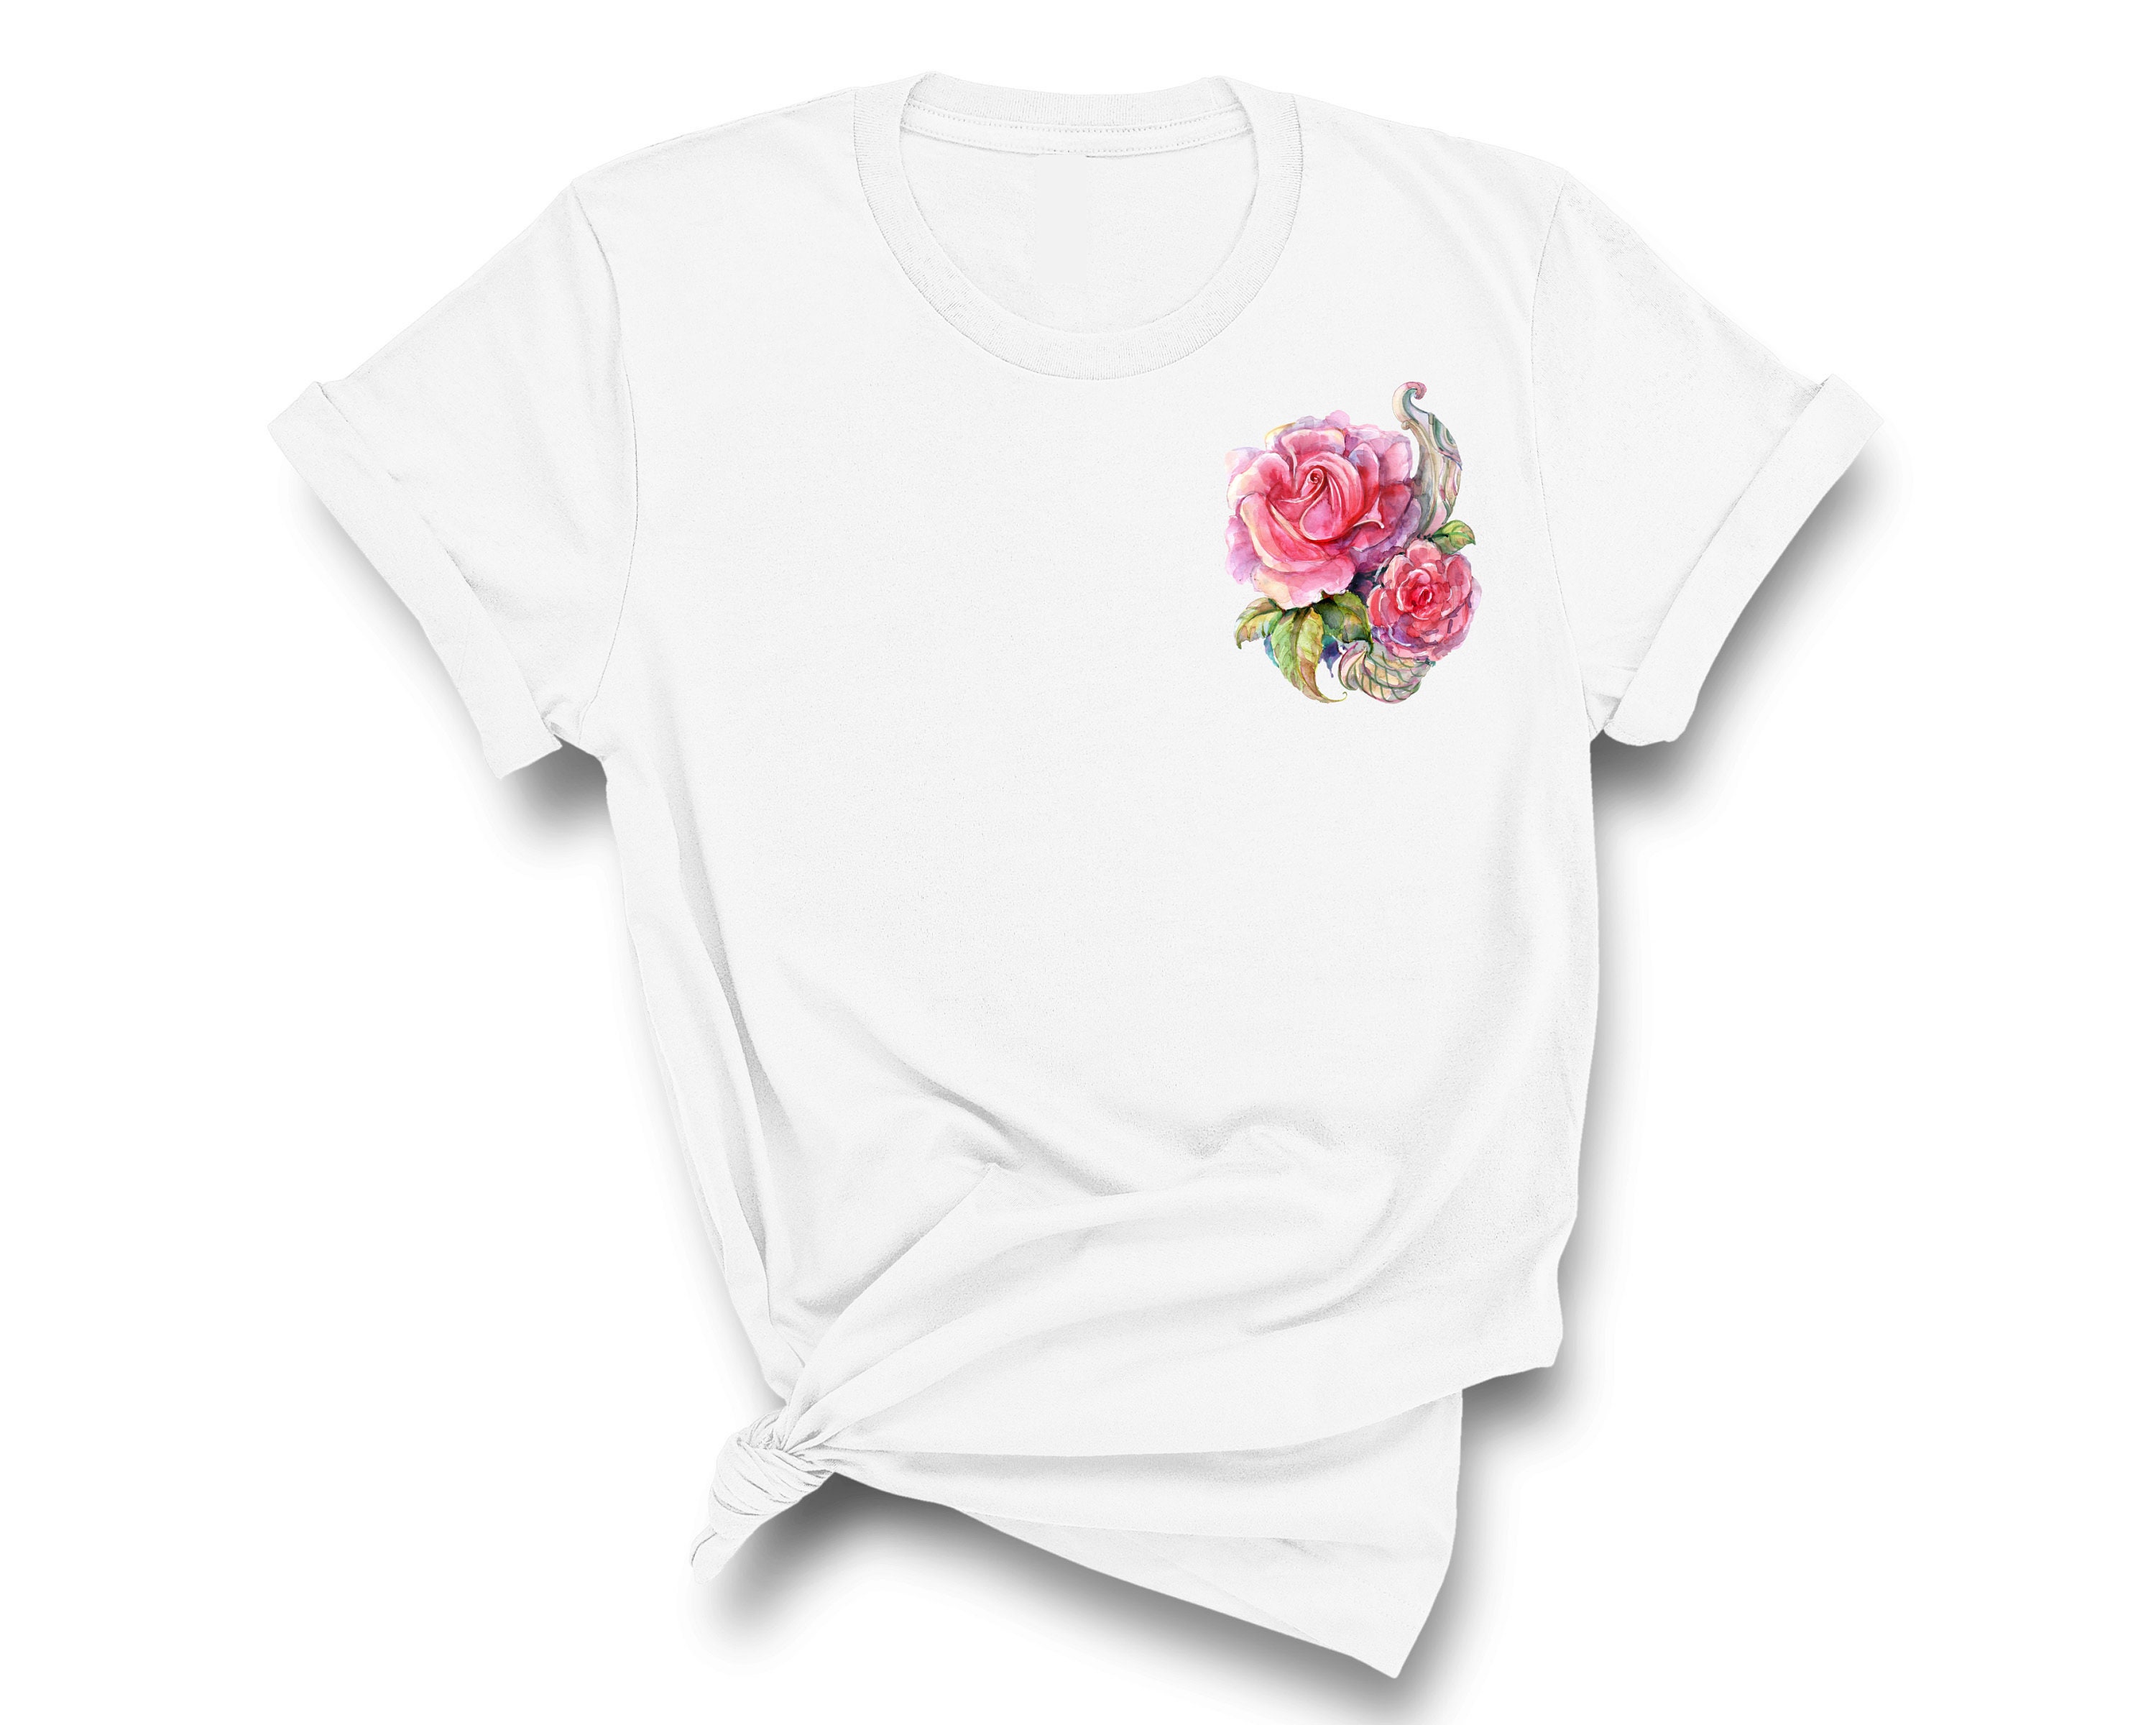 Flower Shirt Aesthetic Clothing Botanical Shirt Flower | Etsy